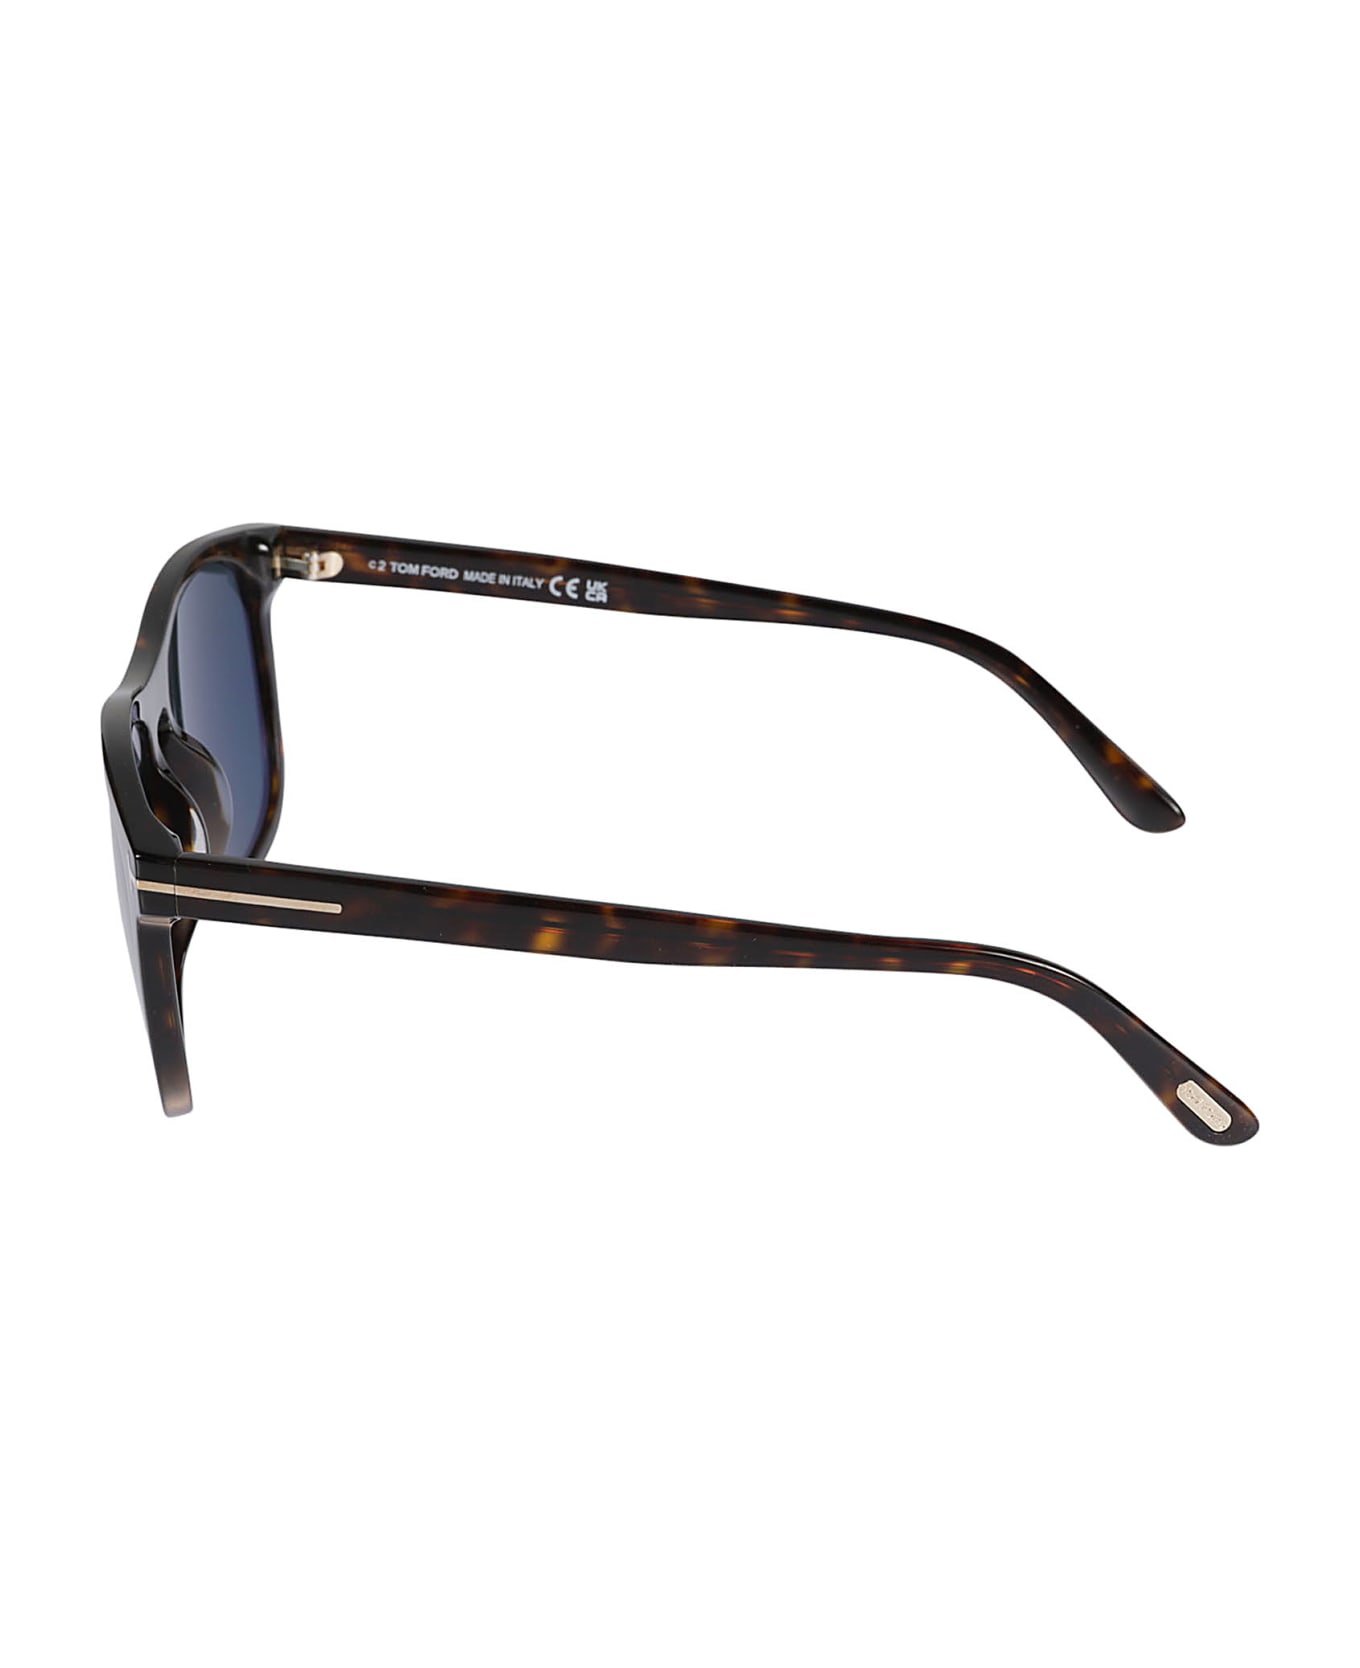 Tom Ford Eyewear Gerard 02 Sunglasses - N/A